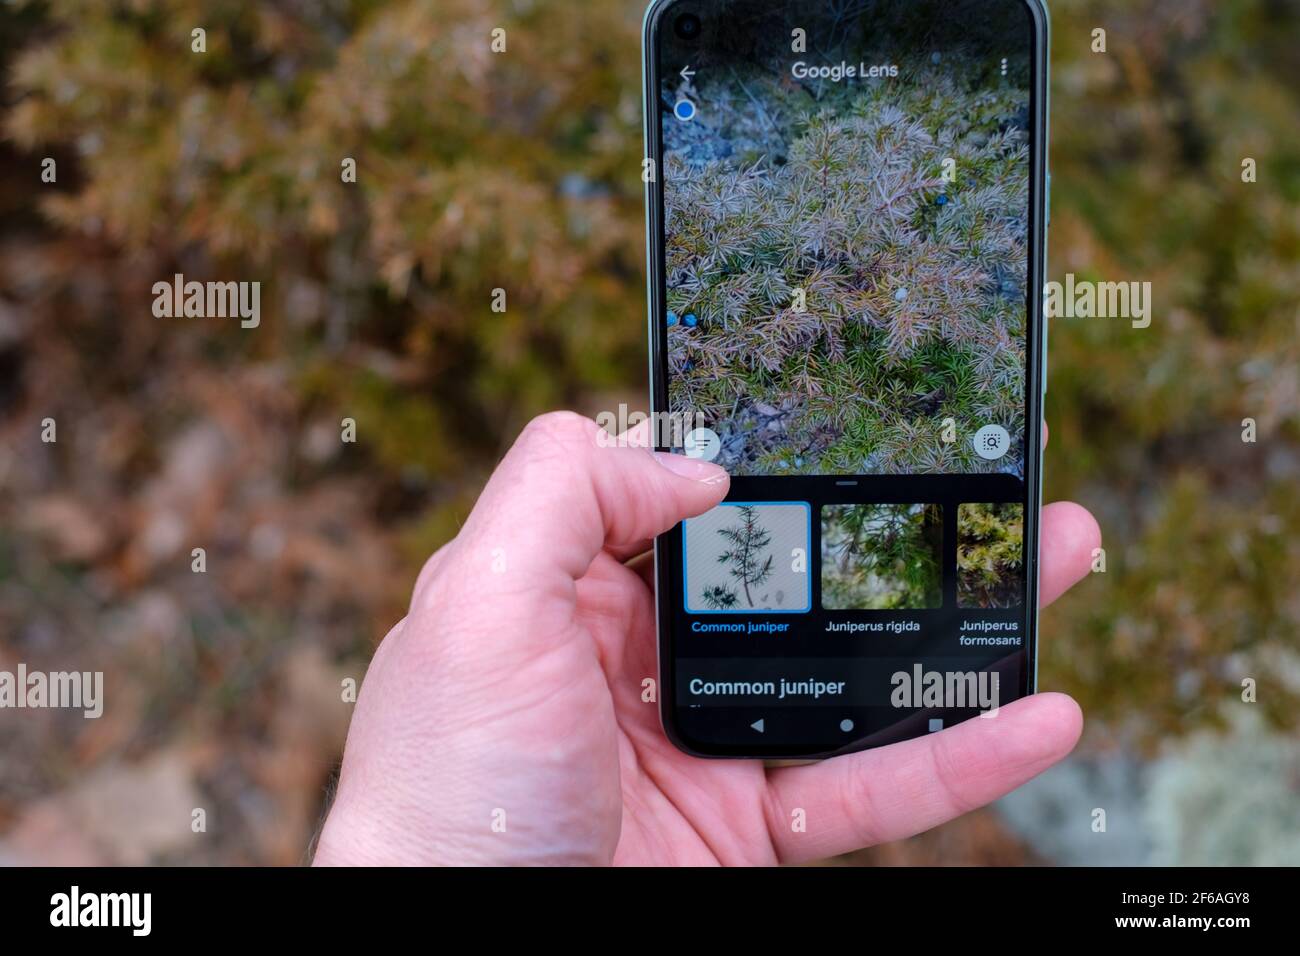 Ottawa, Ontario, Canada - 30 marzo 2021: Uno smartphone Google pixel è tenuto in su, mostrando i risultati della ricerca in Google Lens che identifica una pianta fotografata Foto Stock